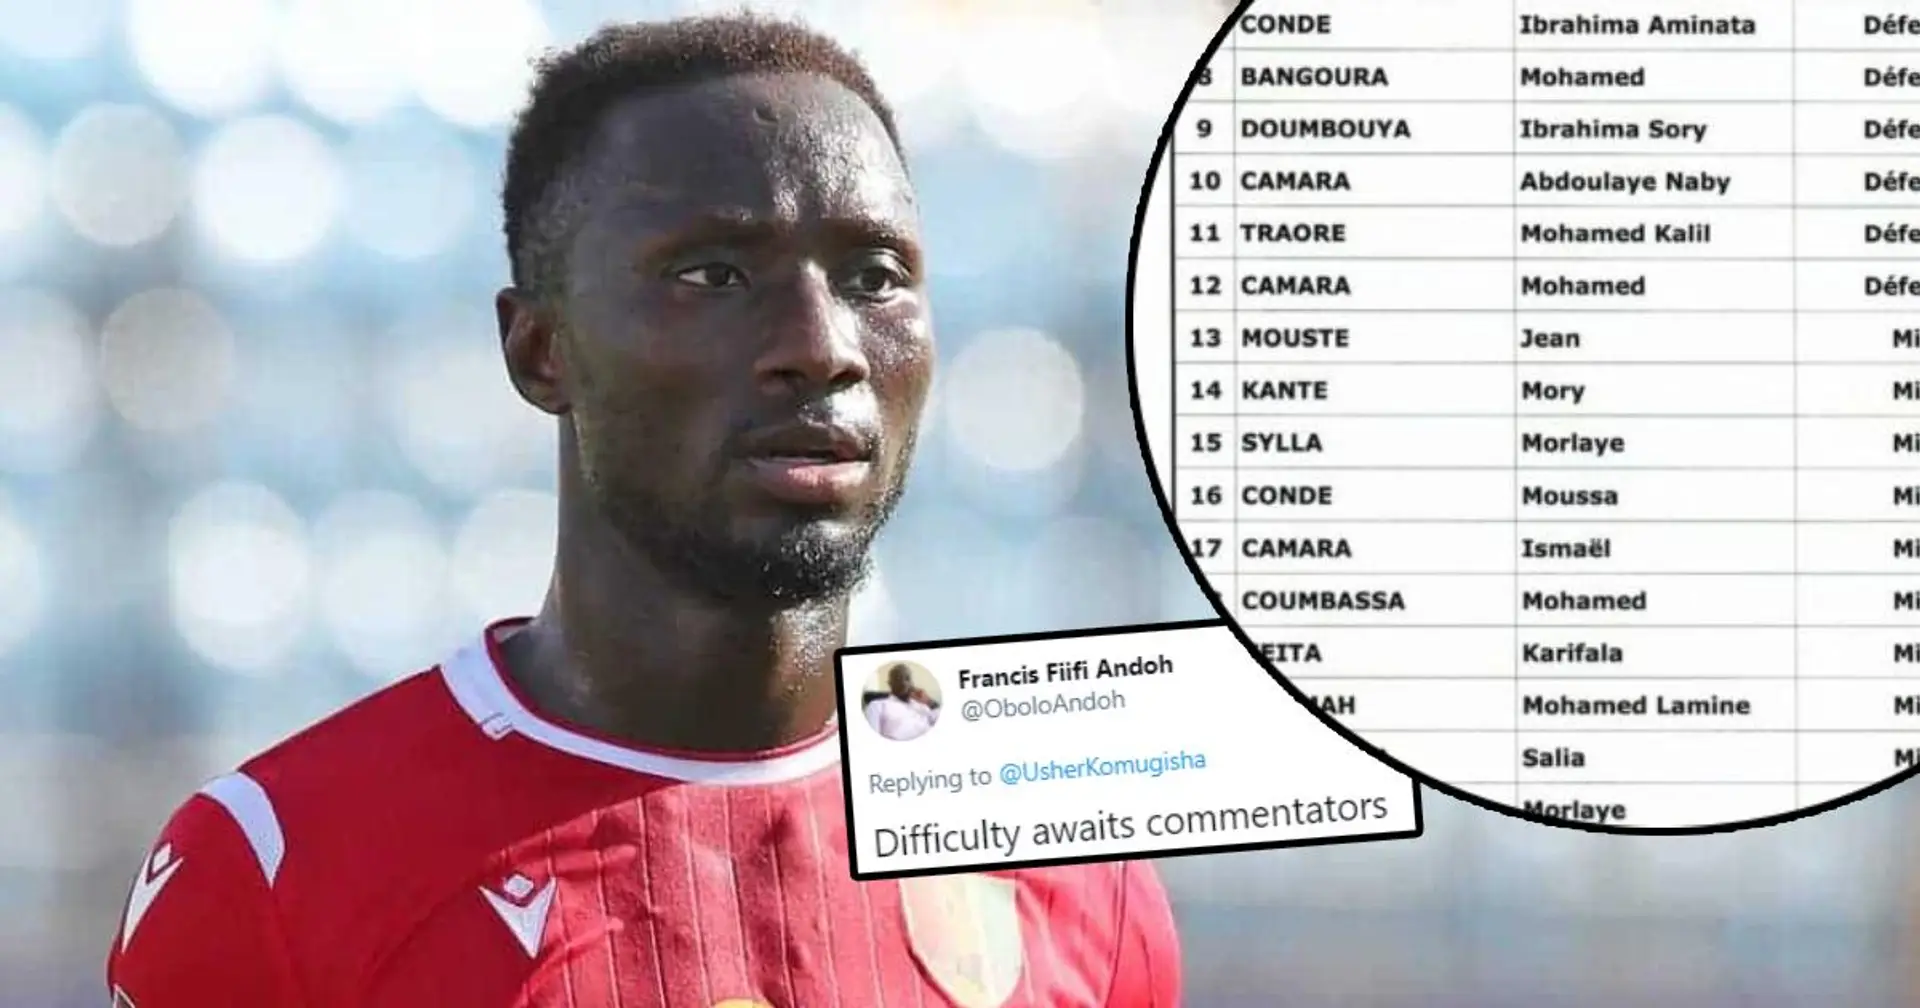 Guinea nominiert 11 Spieler mit demselben Nachnamen für den kommenden Afrika-Cup